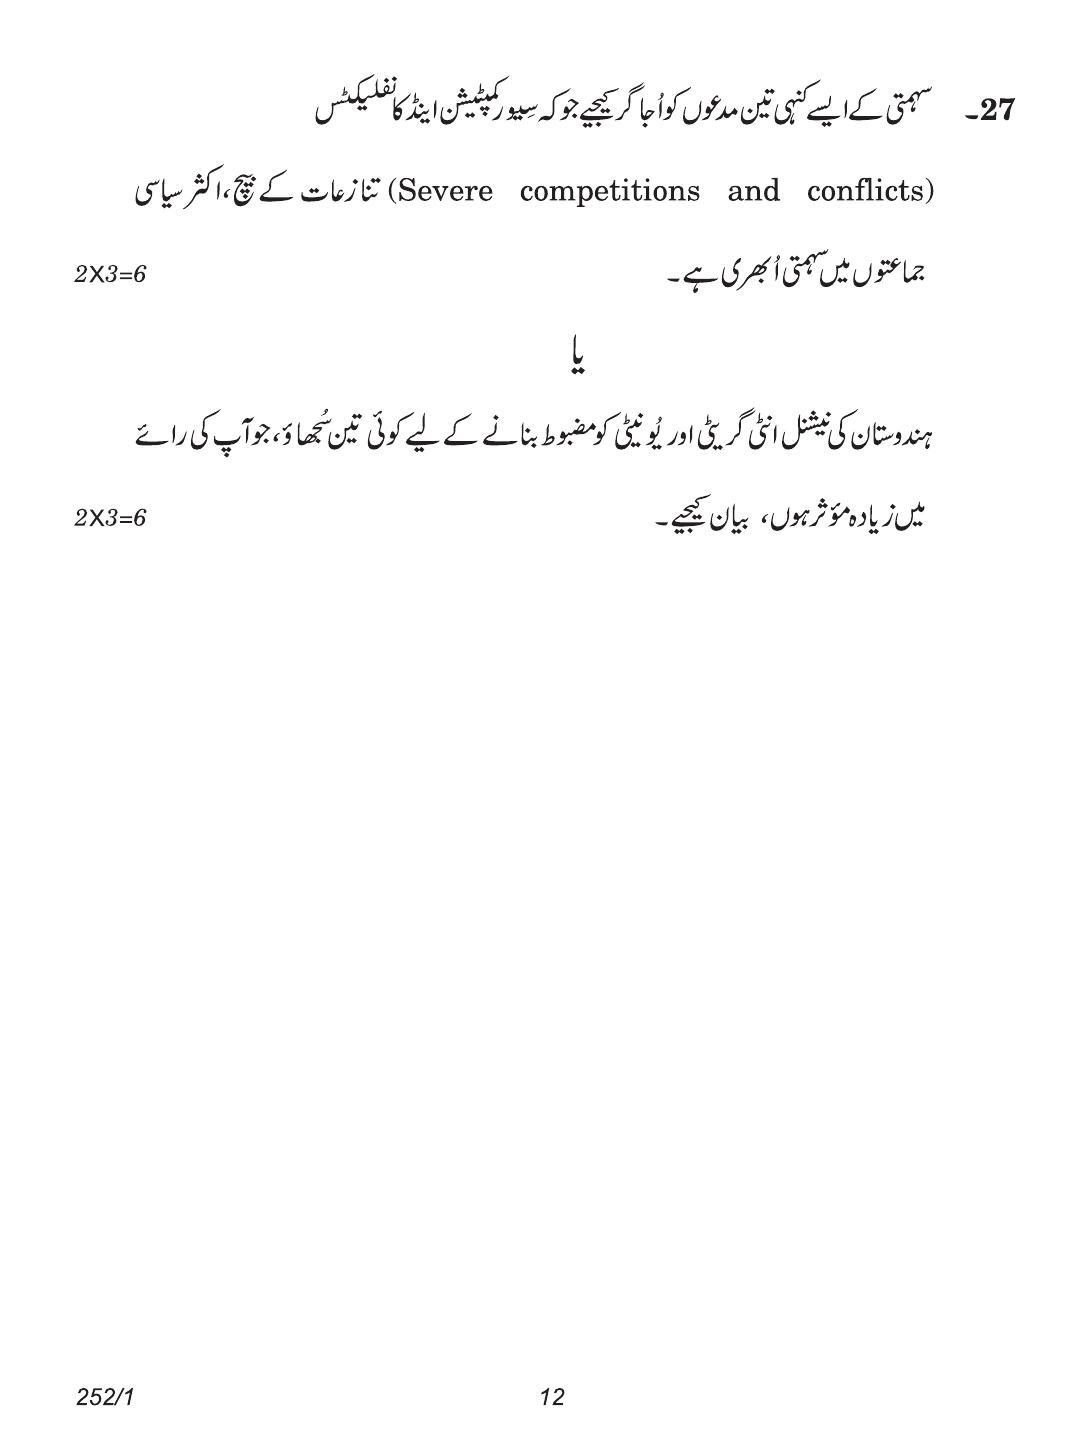 CBSE Class 12 252-1 (Political Science Urdu) 2018 Question Paper - Page 12